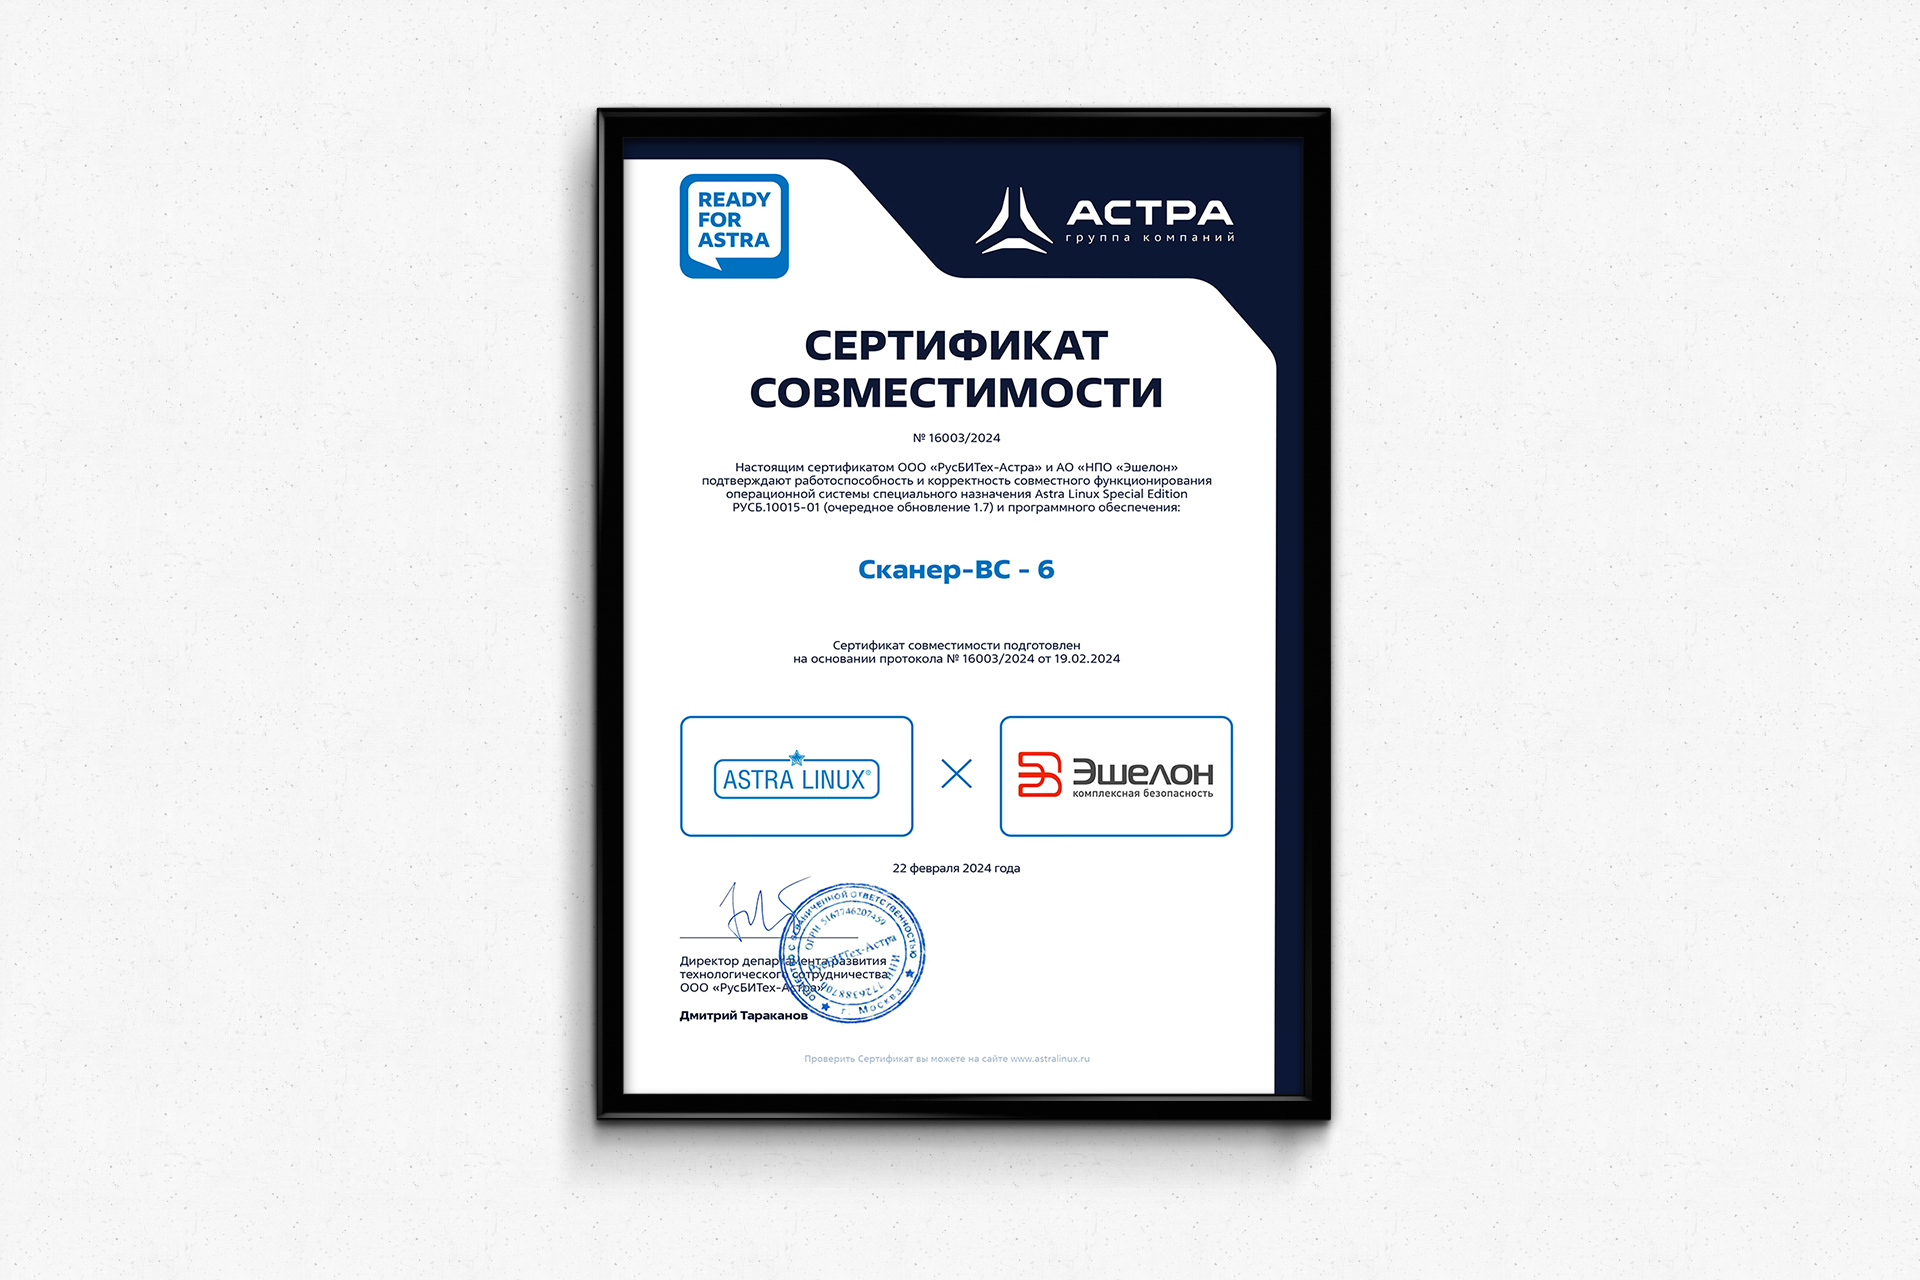 Сканер-ВС 6 получил сертификат совместимости с Astra Linux 1.7